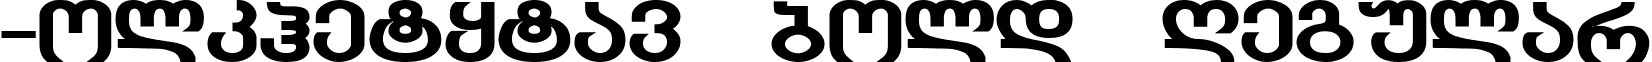 GEO-KolkhetyMtav bold Regular font - KOLK___B.TTF